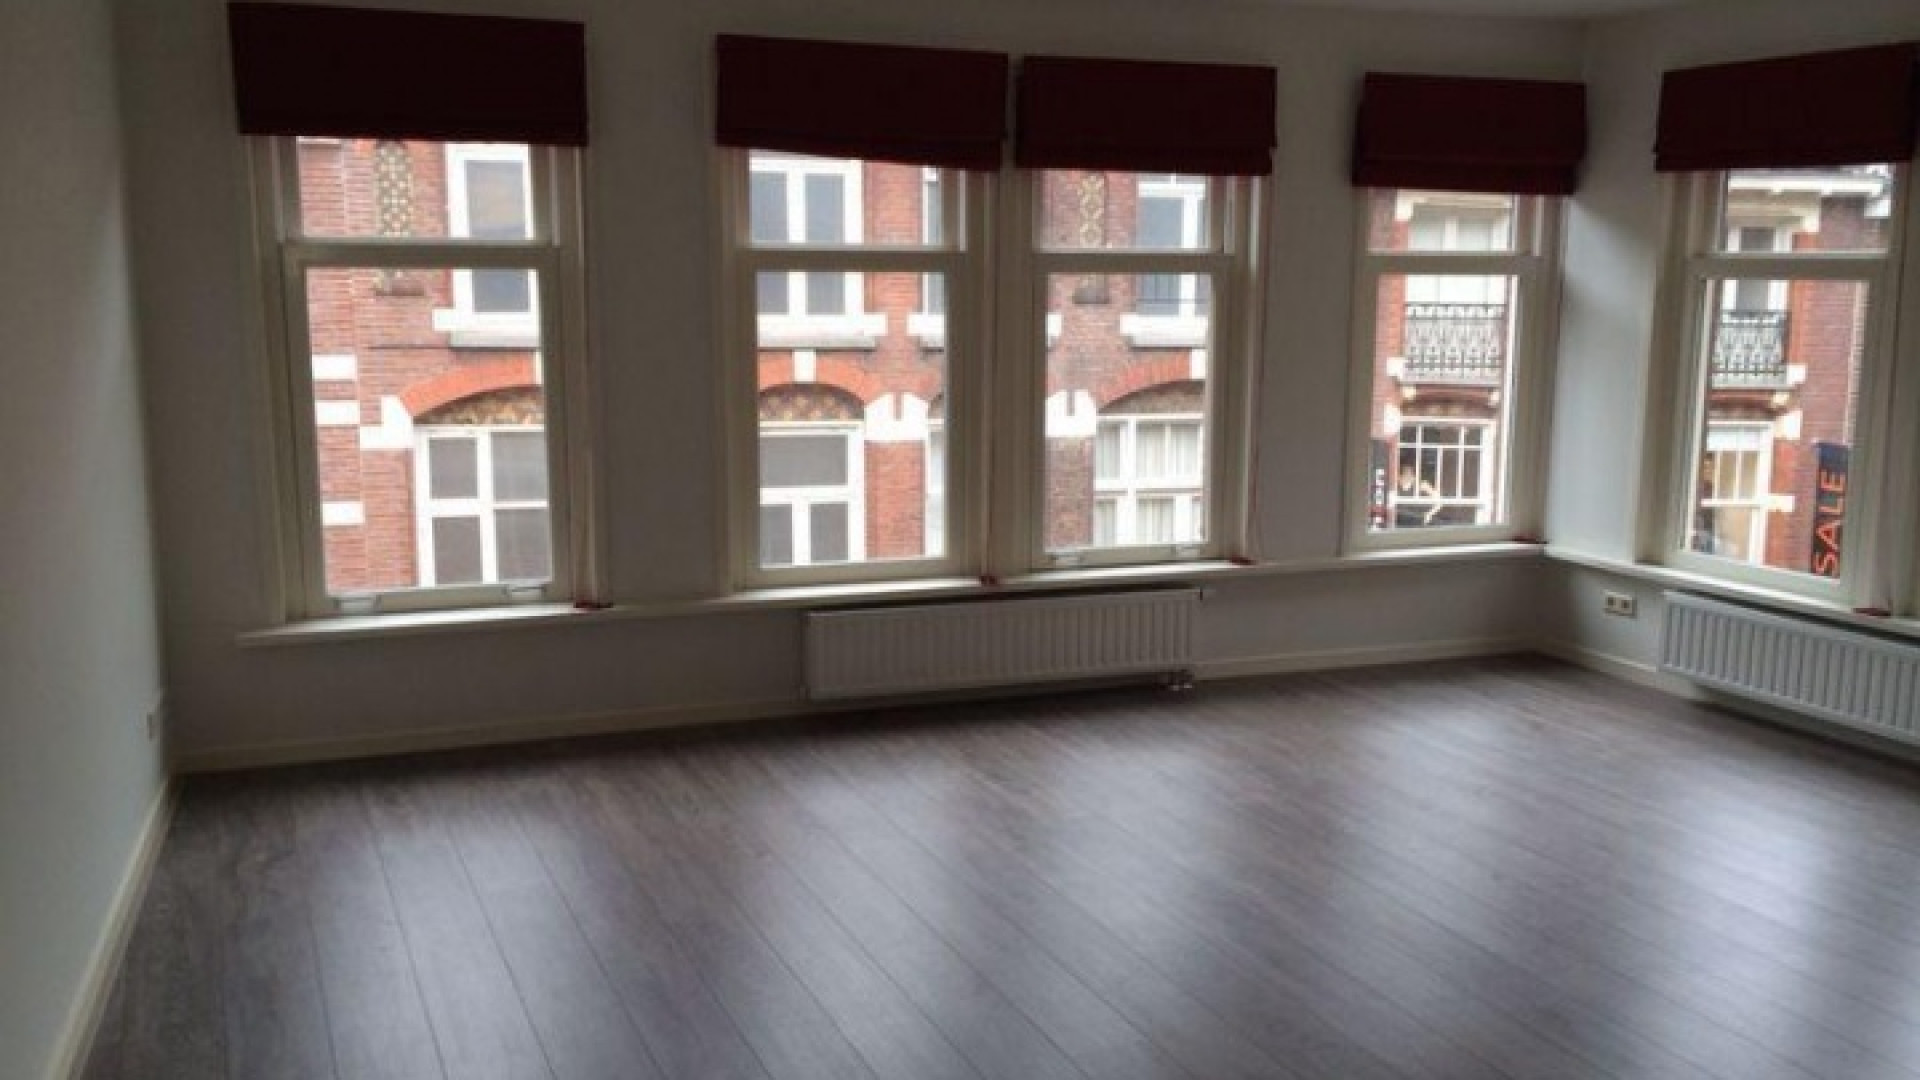 Zimra Geurts huurt appartement in centrum van Utrecht. Zie foto's 3